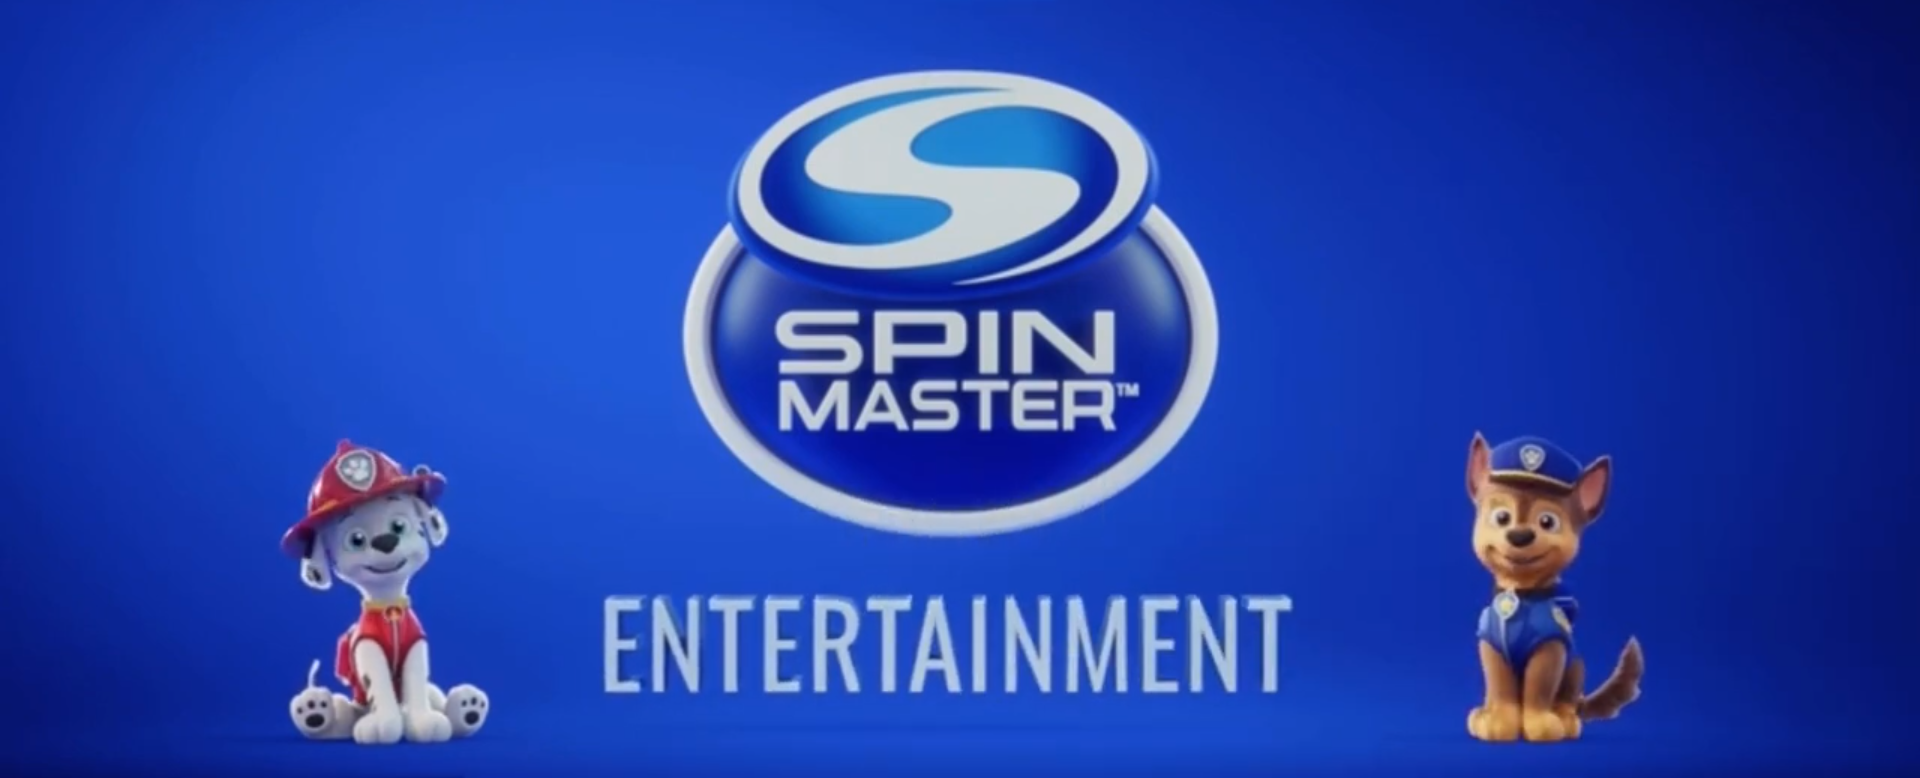 spin master logo png